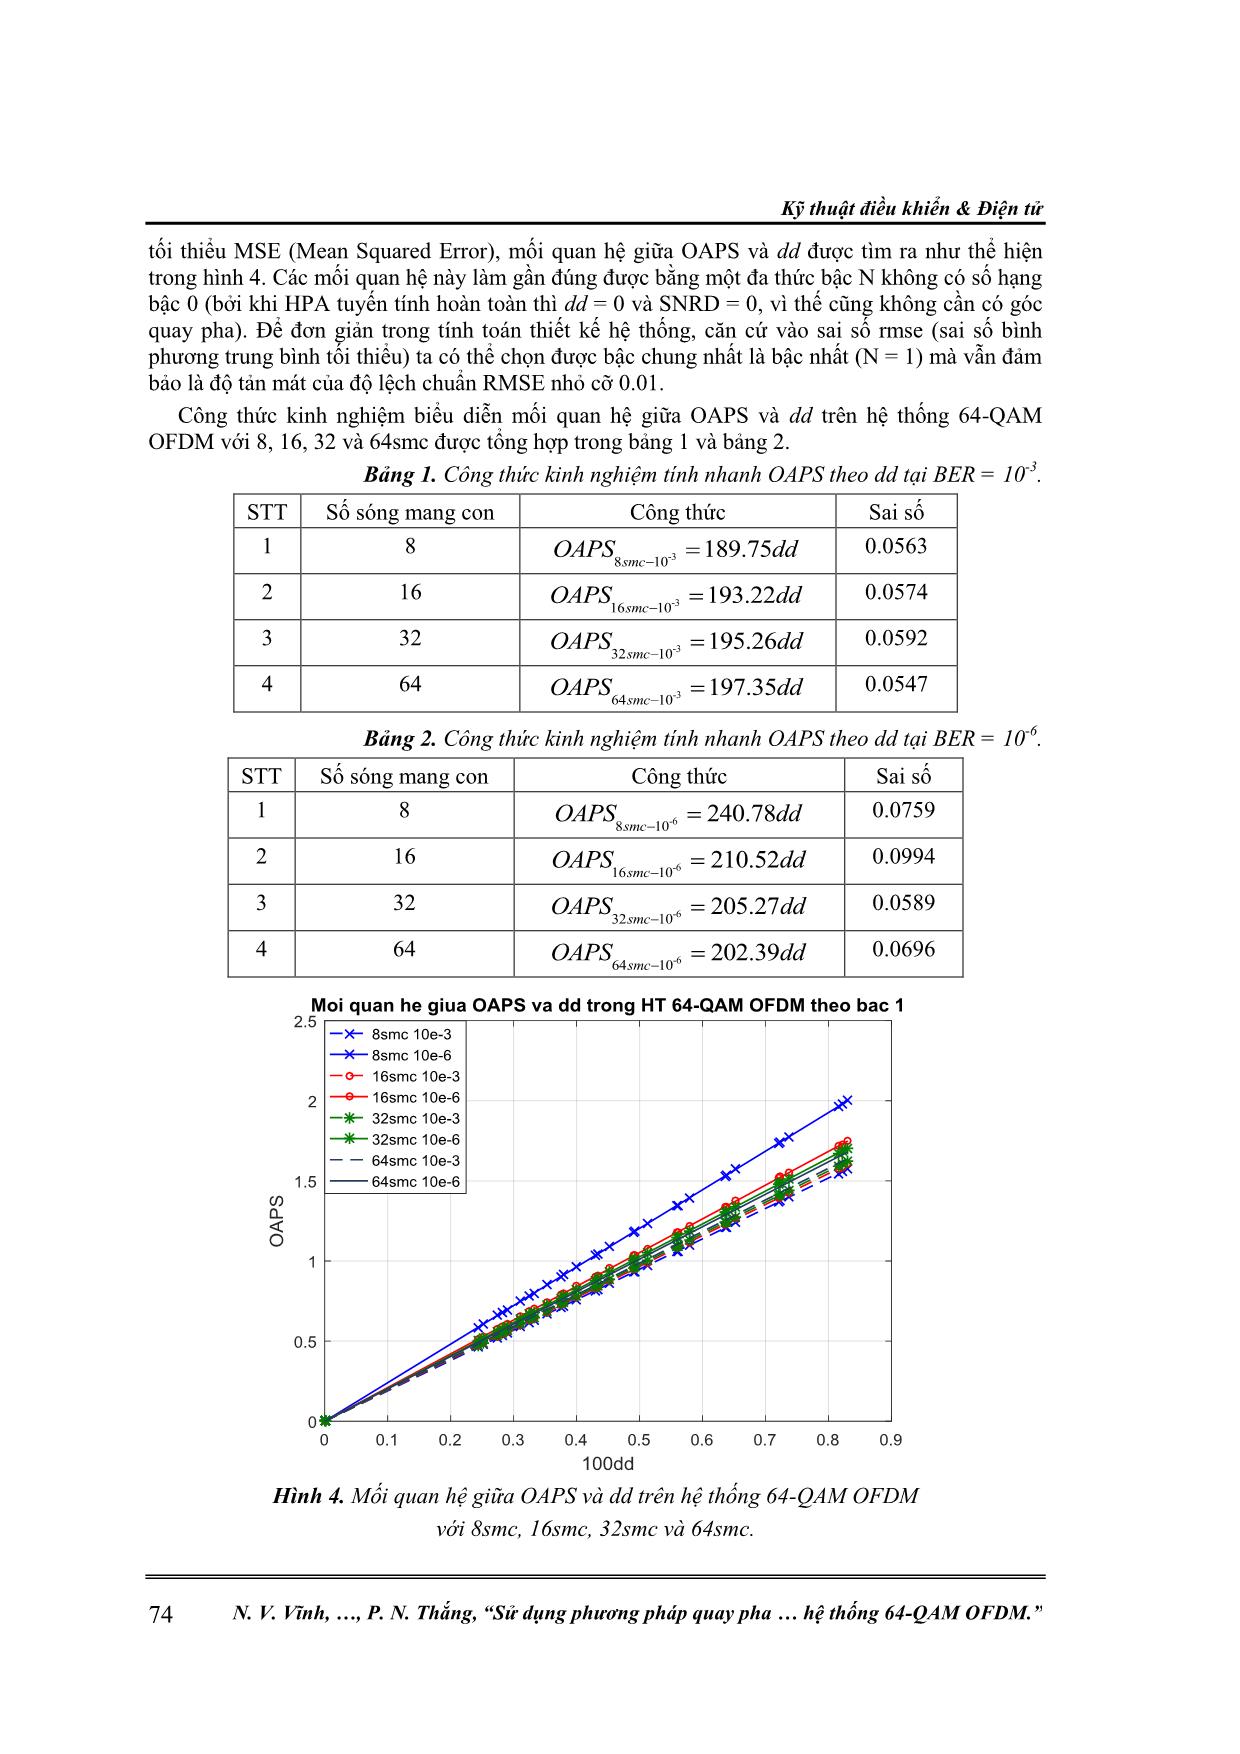 Sử dụng phương pháp quay pha phụ tối ưu để giảm ảnh hưởng của méo phi tuyến trong hệ thống 64-QAM Ofdm trang 4